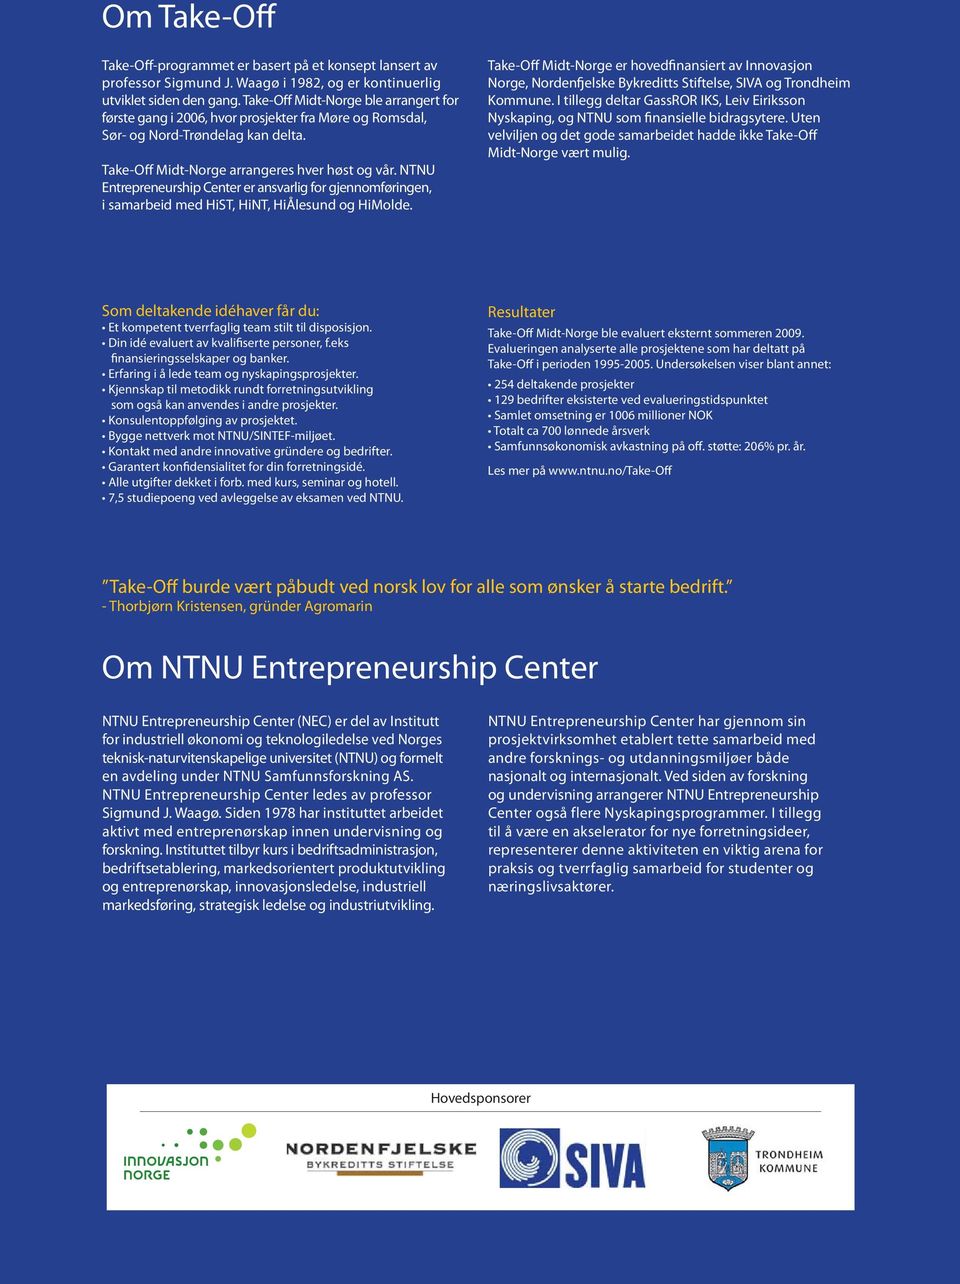 NTNU Entrepreneurship Center er ansvarlig for gjennomføringen, i samarbeid med HiST, HiNT, HiÅlesund og HiMolde.